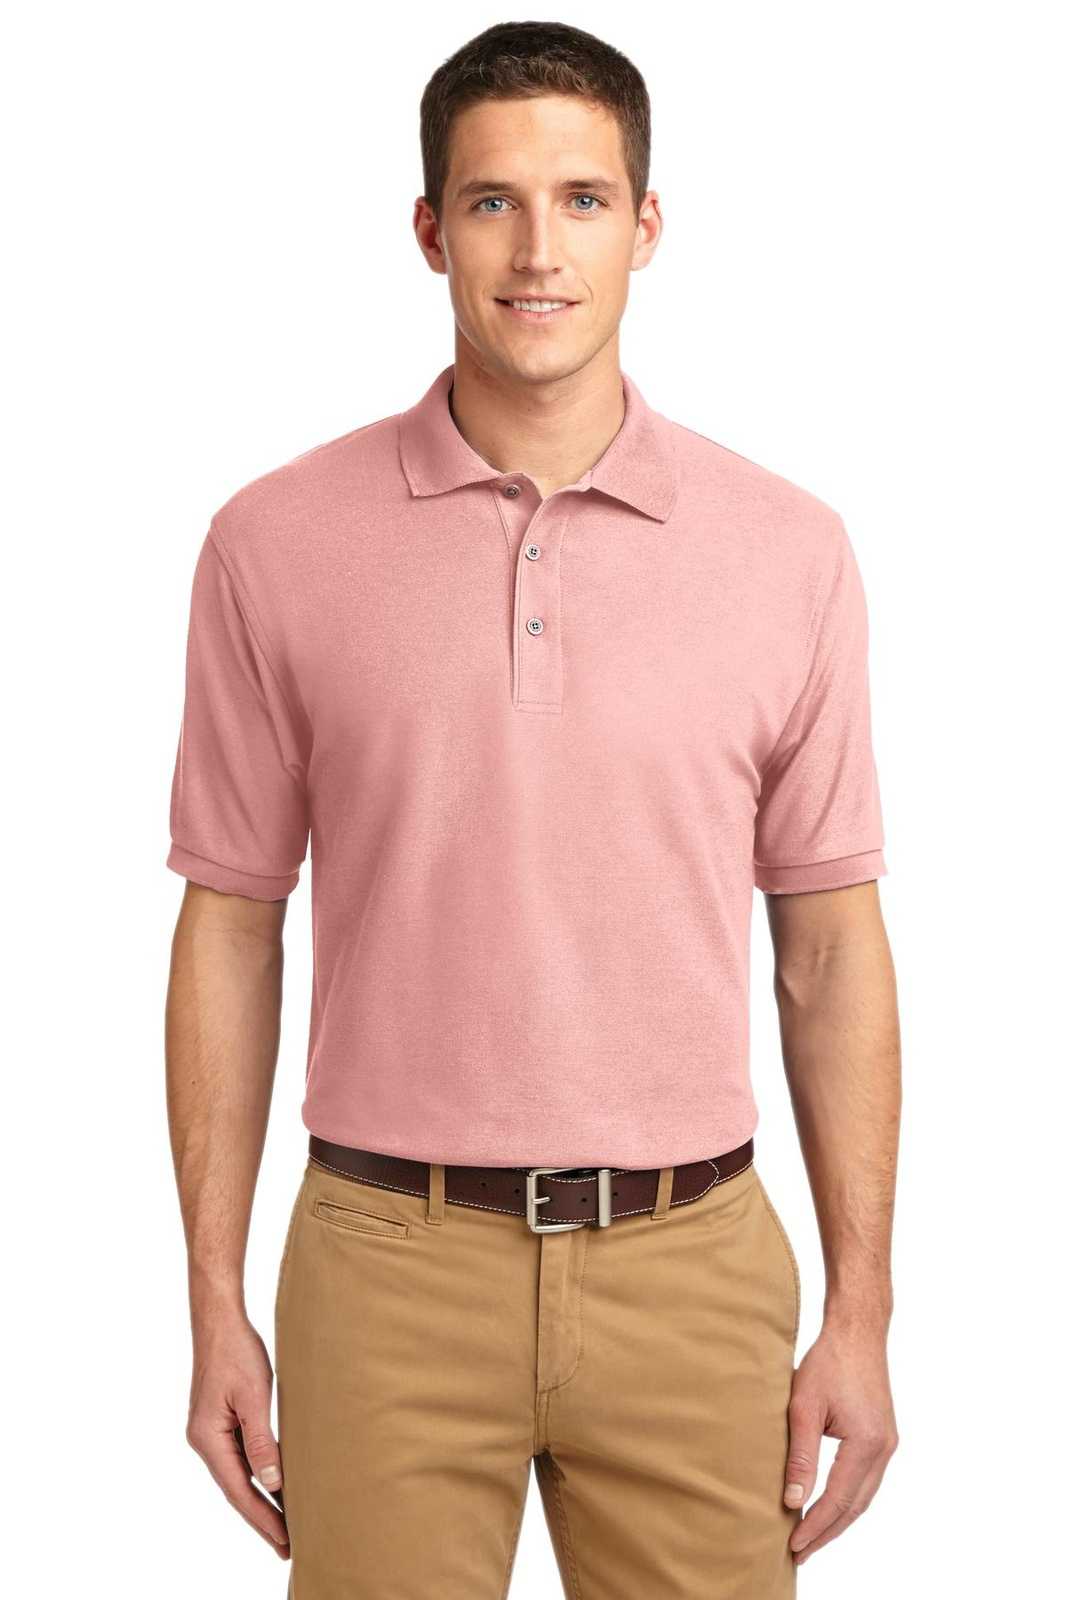 LUQATTI Men Solid Formal Pink Shirt - Buy LUQATTI Men Solid Formal Pink  Shirt Online at Best Prices in India | Flipkart.com